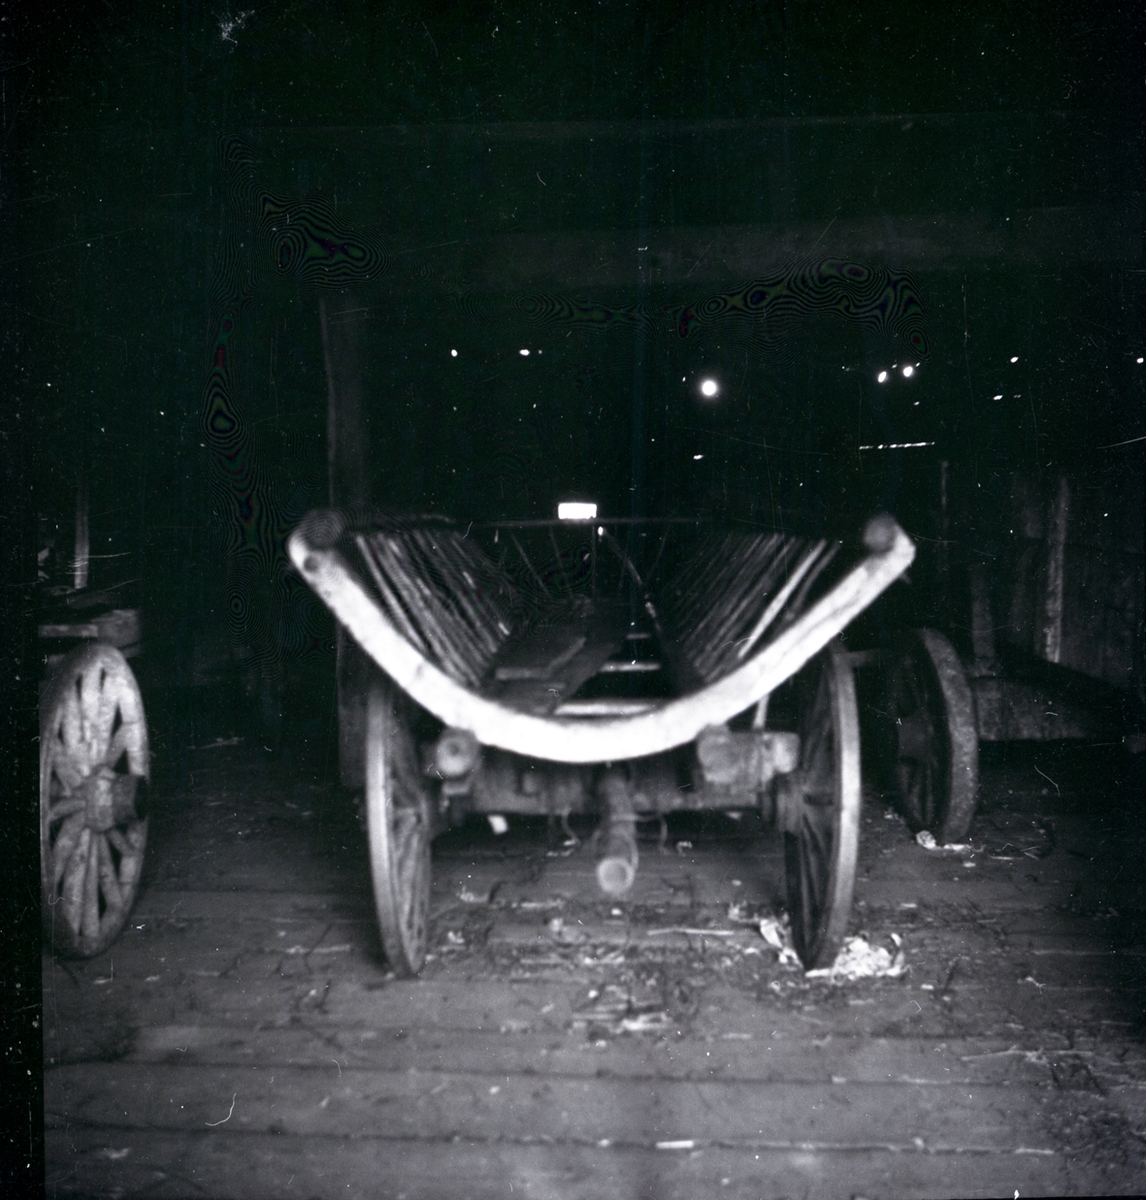 Lilla Fighult vagn med häck i rund profil.